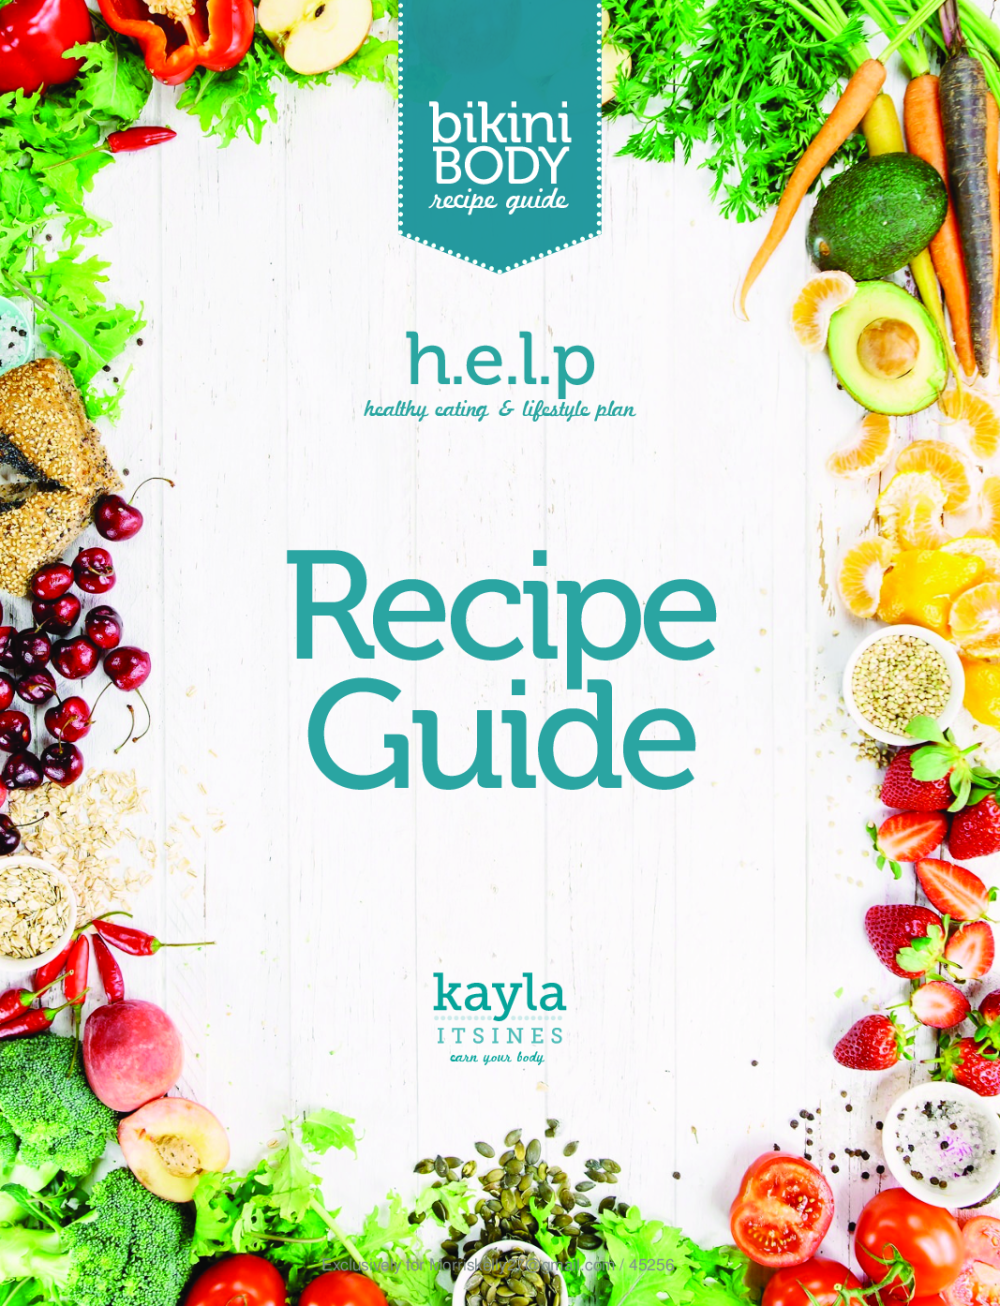 Kayla Itsines Bikini Body Guide Recipe Guide Pobierz Pdf Z Docer Pl